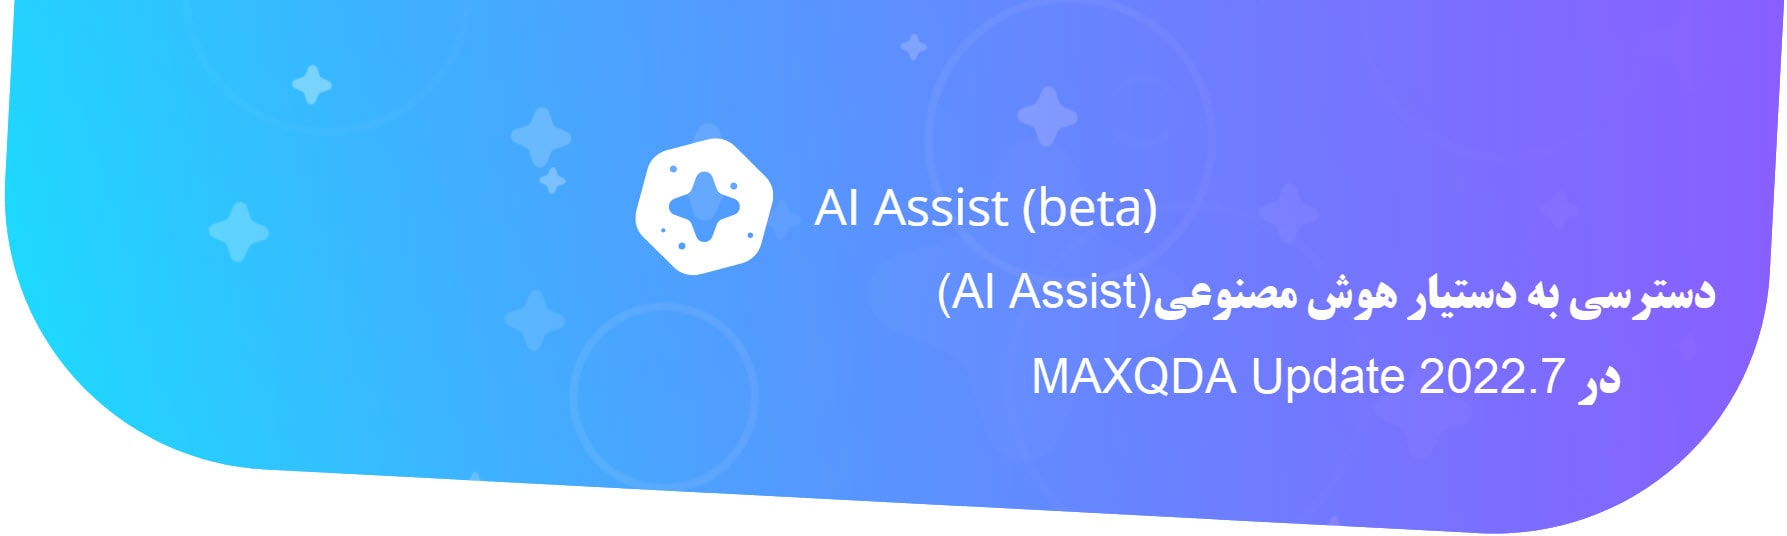 دانلود دستیار هوش مصنوعی(AI Assist) مکس کیودا MAXQDA, AI Assist برای مکس کیودا 2023,کرک نرم افزار مکس کیودا MAXQDA Update 2022.7